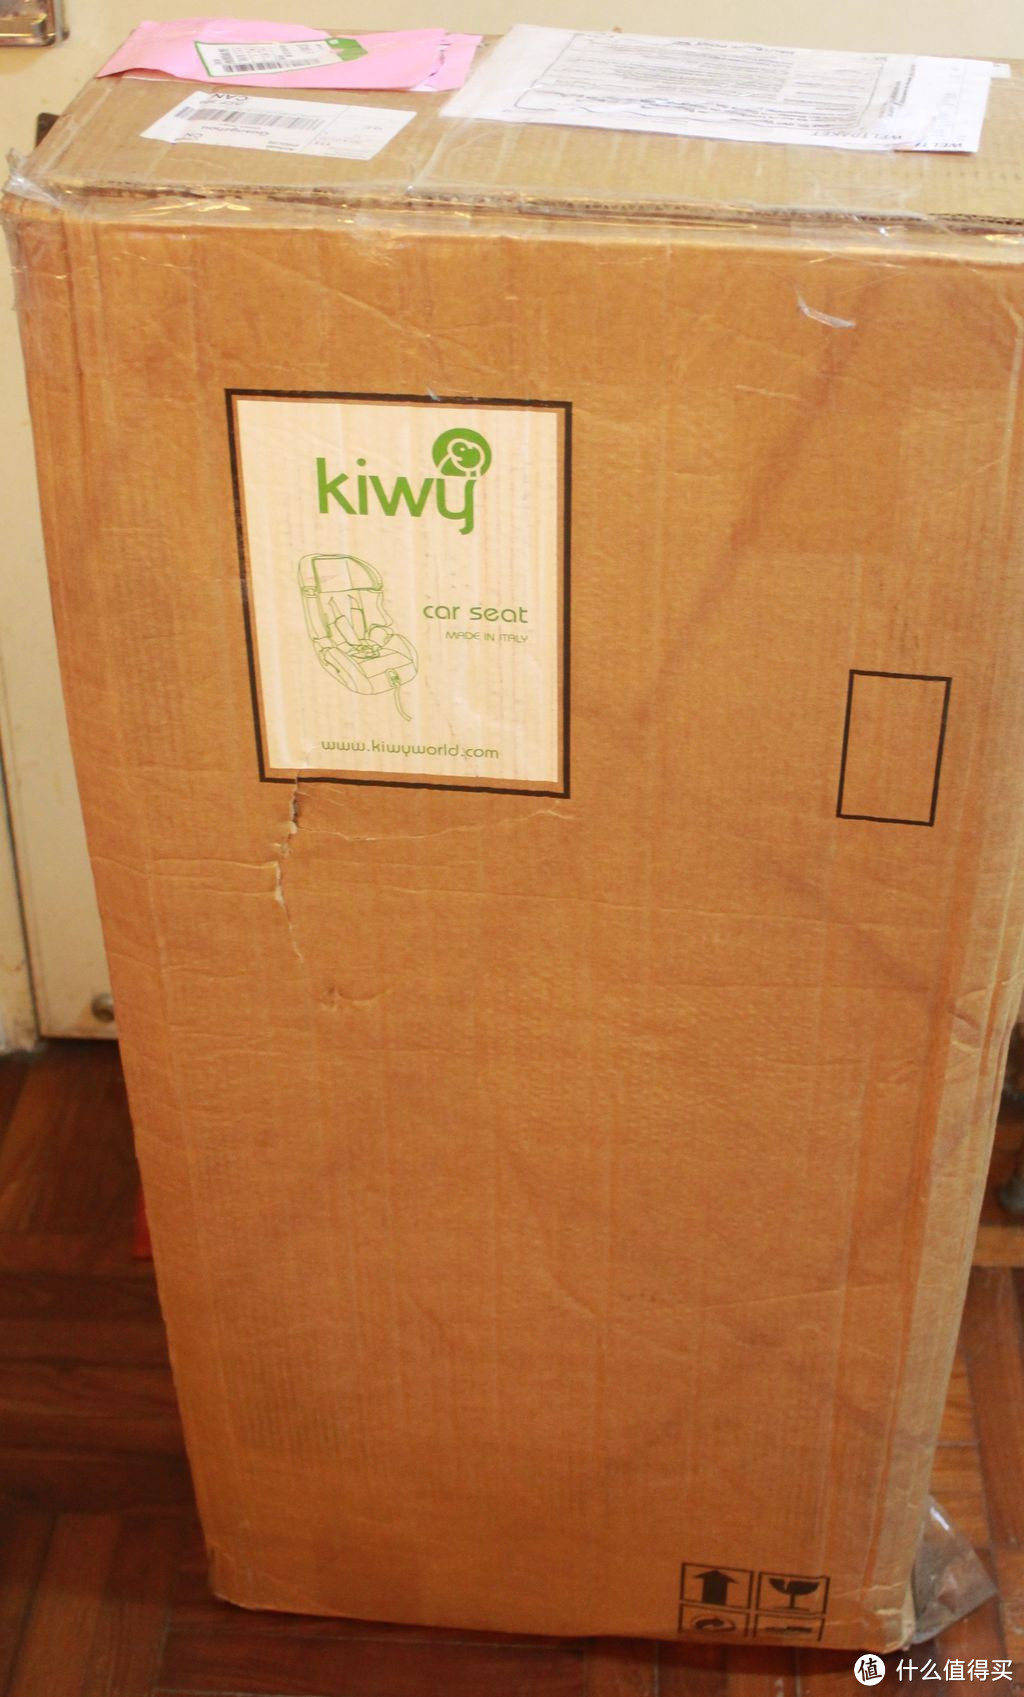 Kiwy SLF 123 Q-Fix 9-36kg 儿童安全座椅